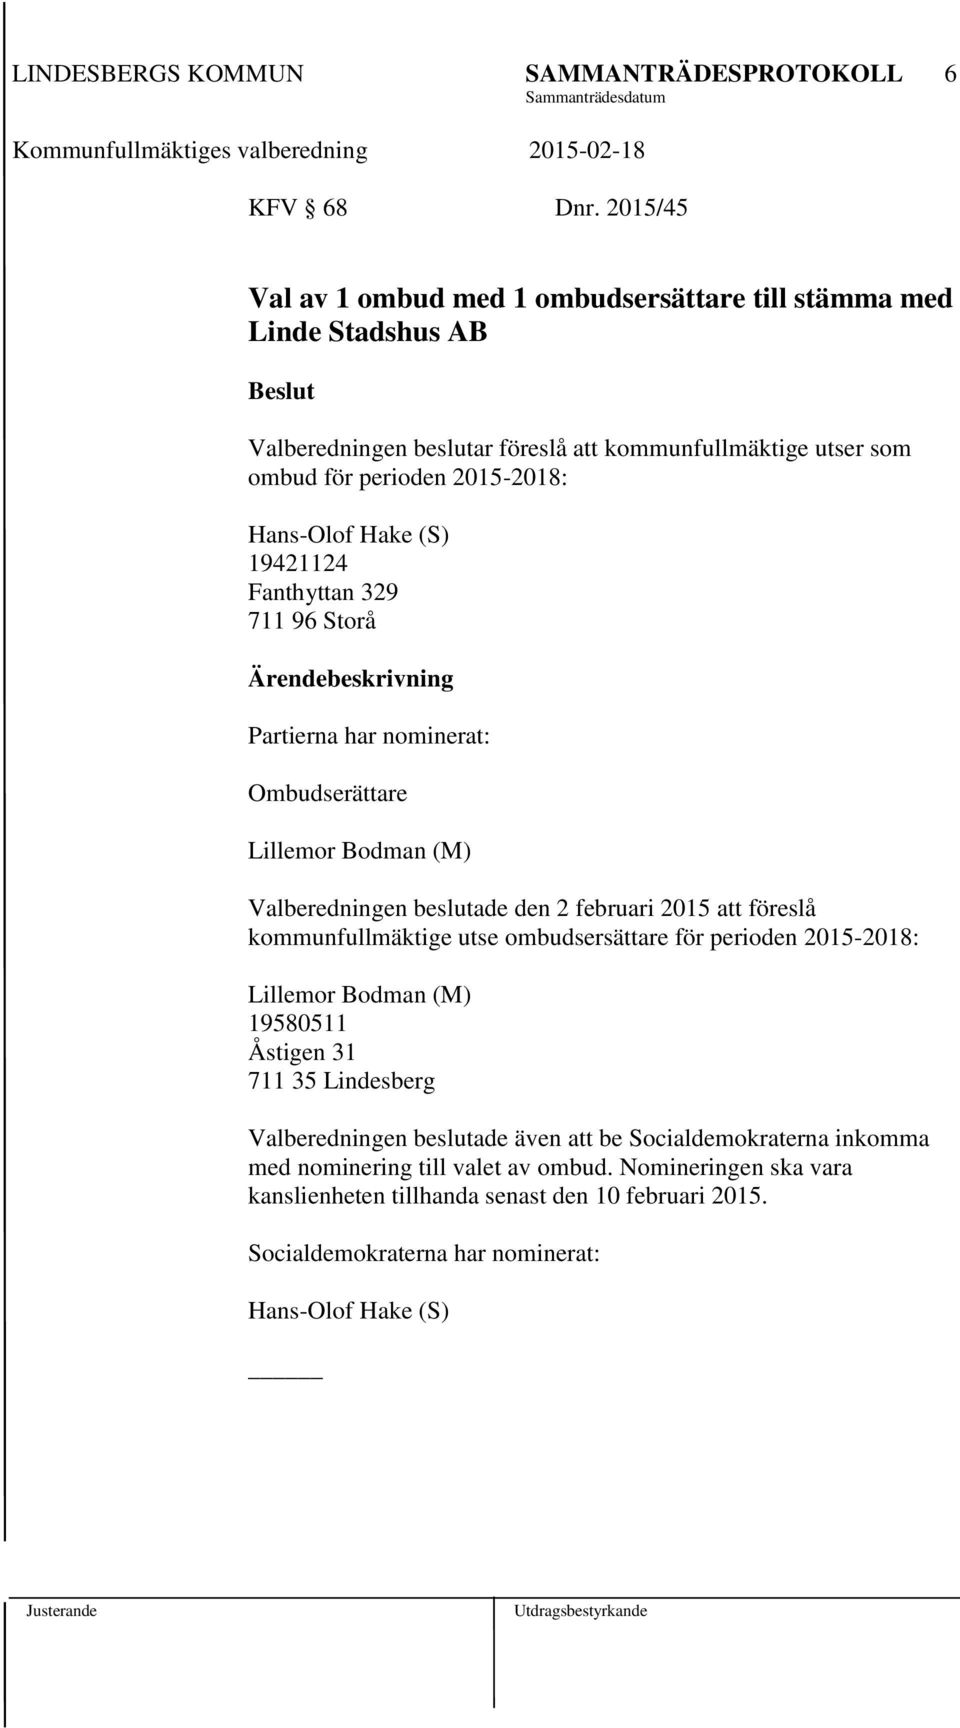 Hans-Olof Hake (S) 19421124 Fanthyttan 329 711 96 Storå Partierna har nominerat: Ombudserättare Lillemor Bodman (M) Valberedningen beslutade den 2 februari 2015 att föreslå